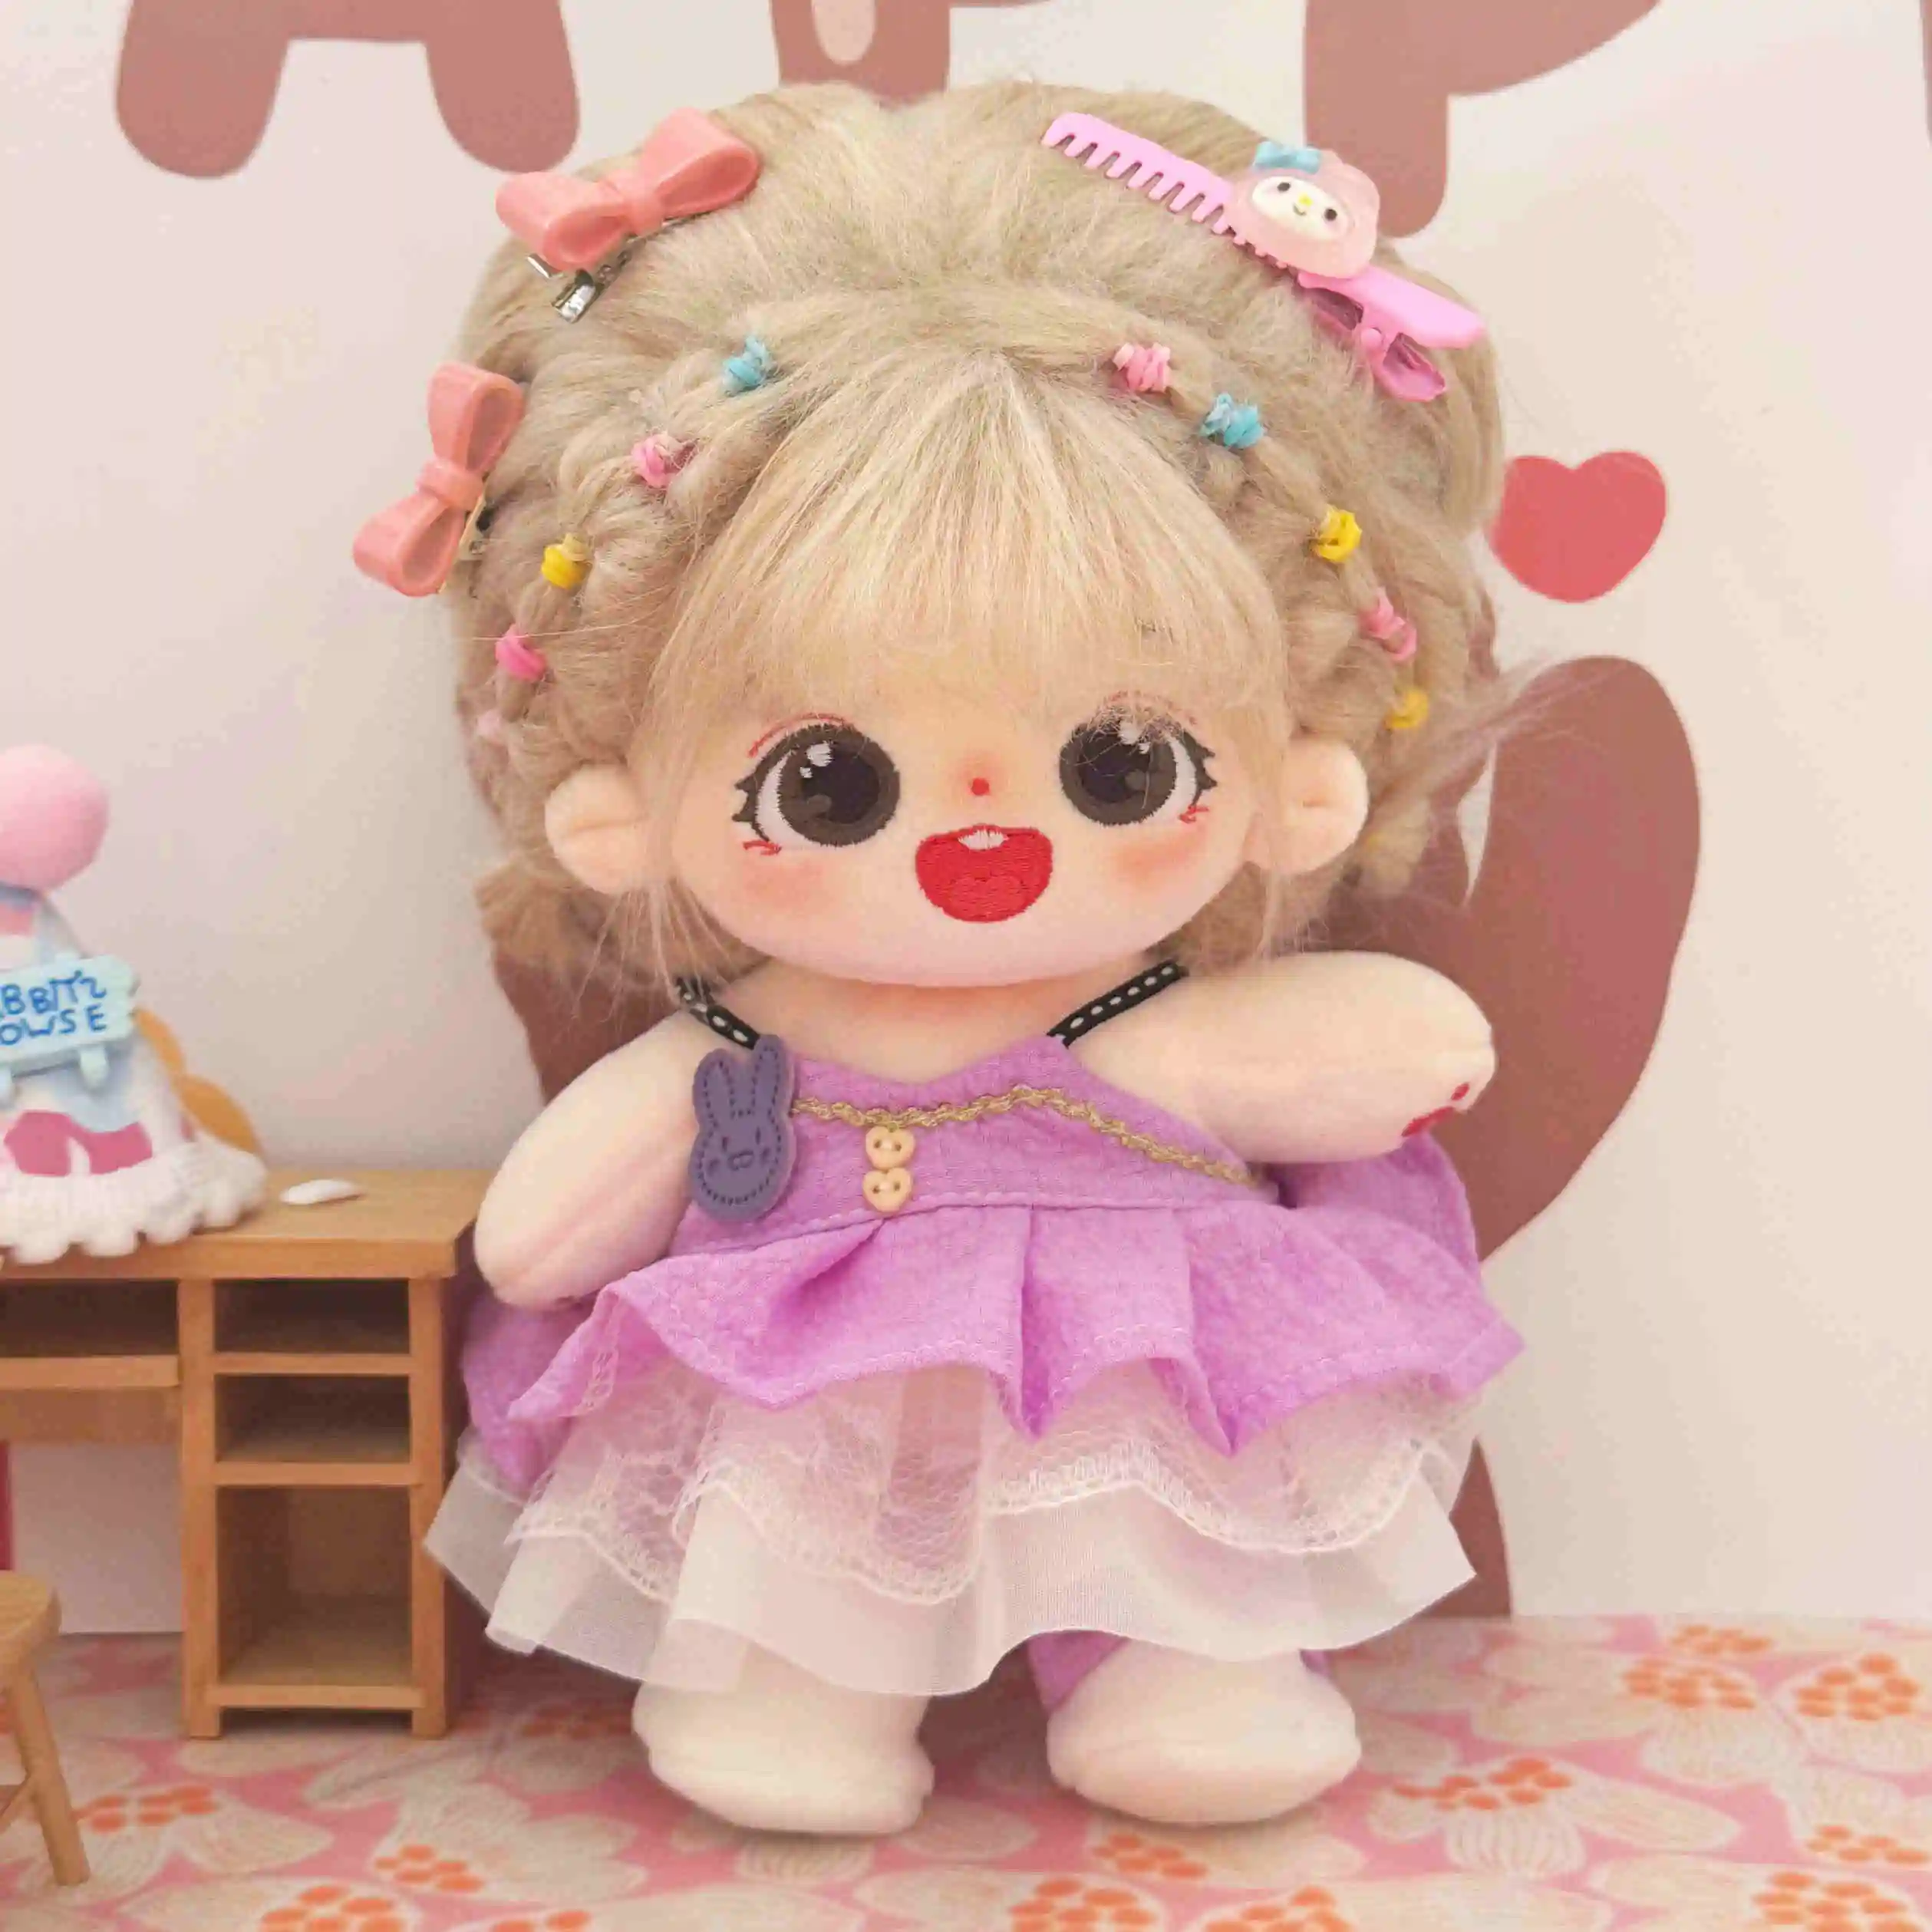 カスタム20cmかわいいコットン人形と服ロングカーリーポニーテール赤ちゃん人形はカスタムサービスOEM ODMを提供します